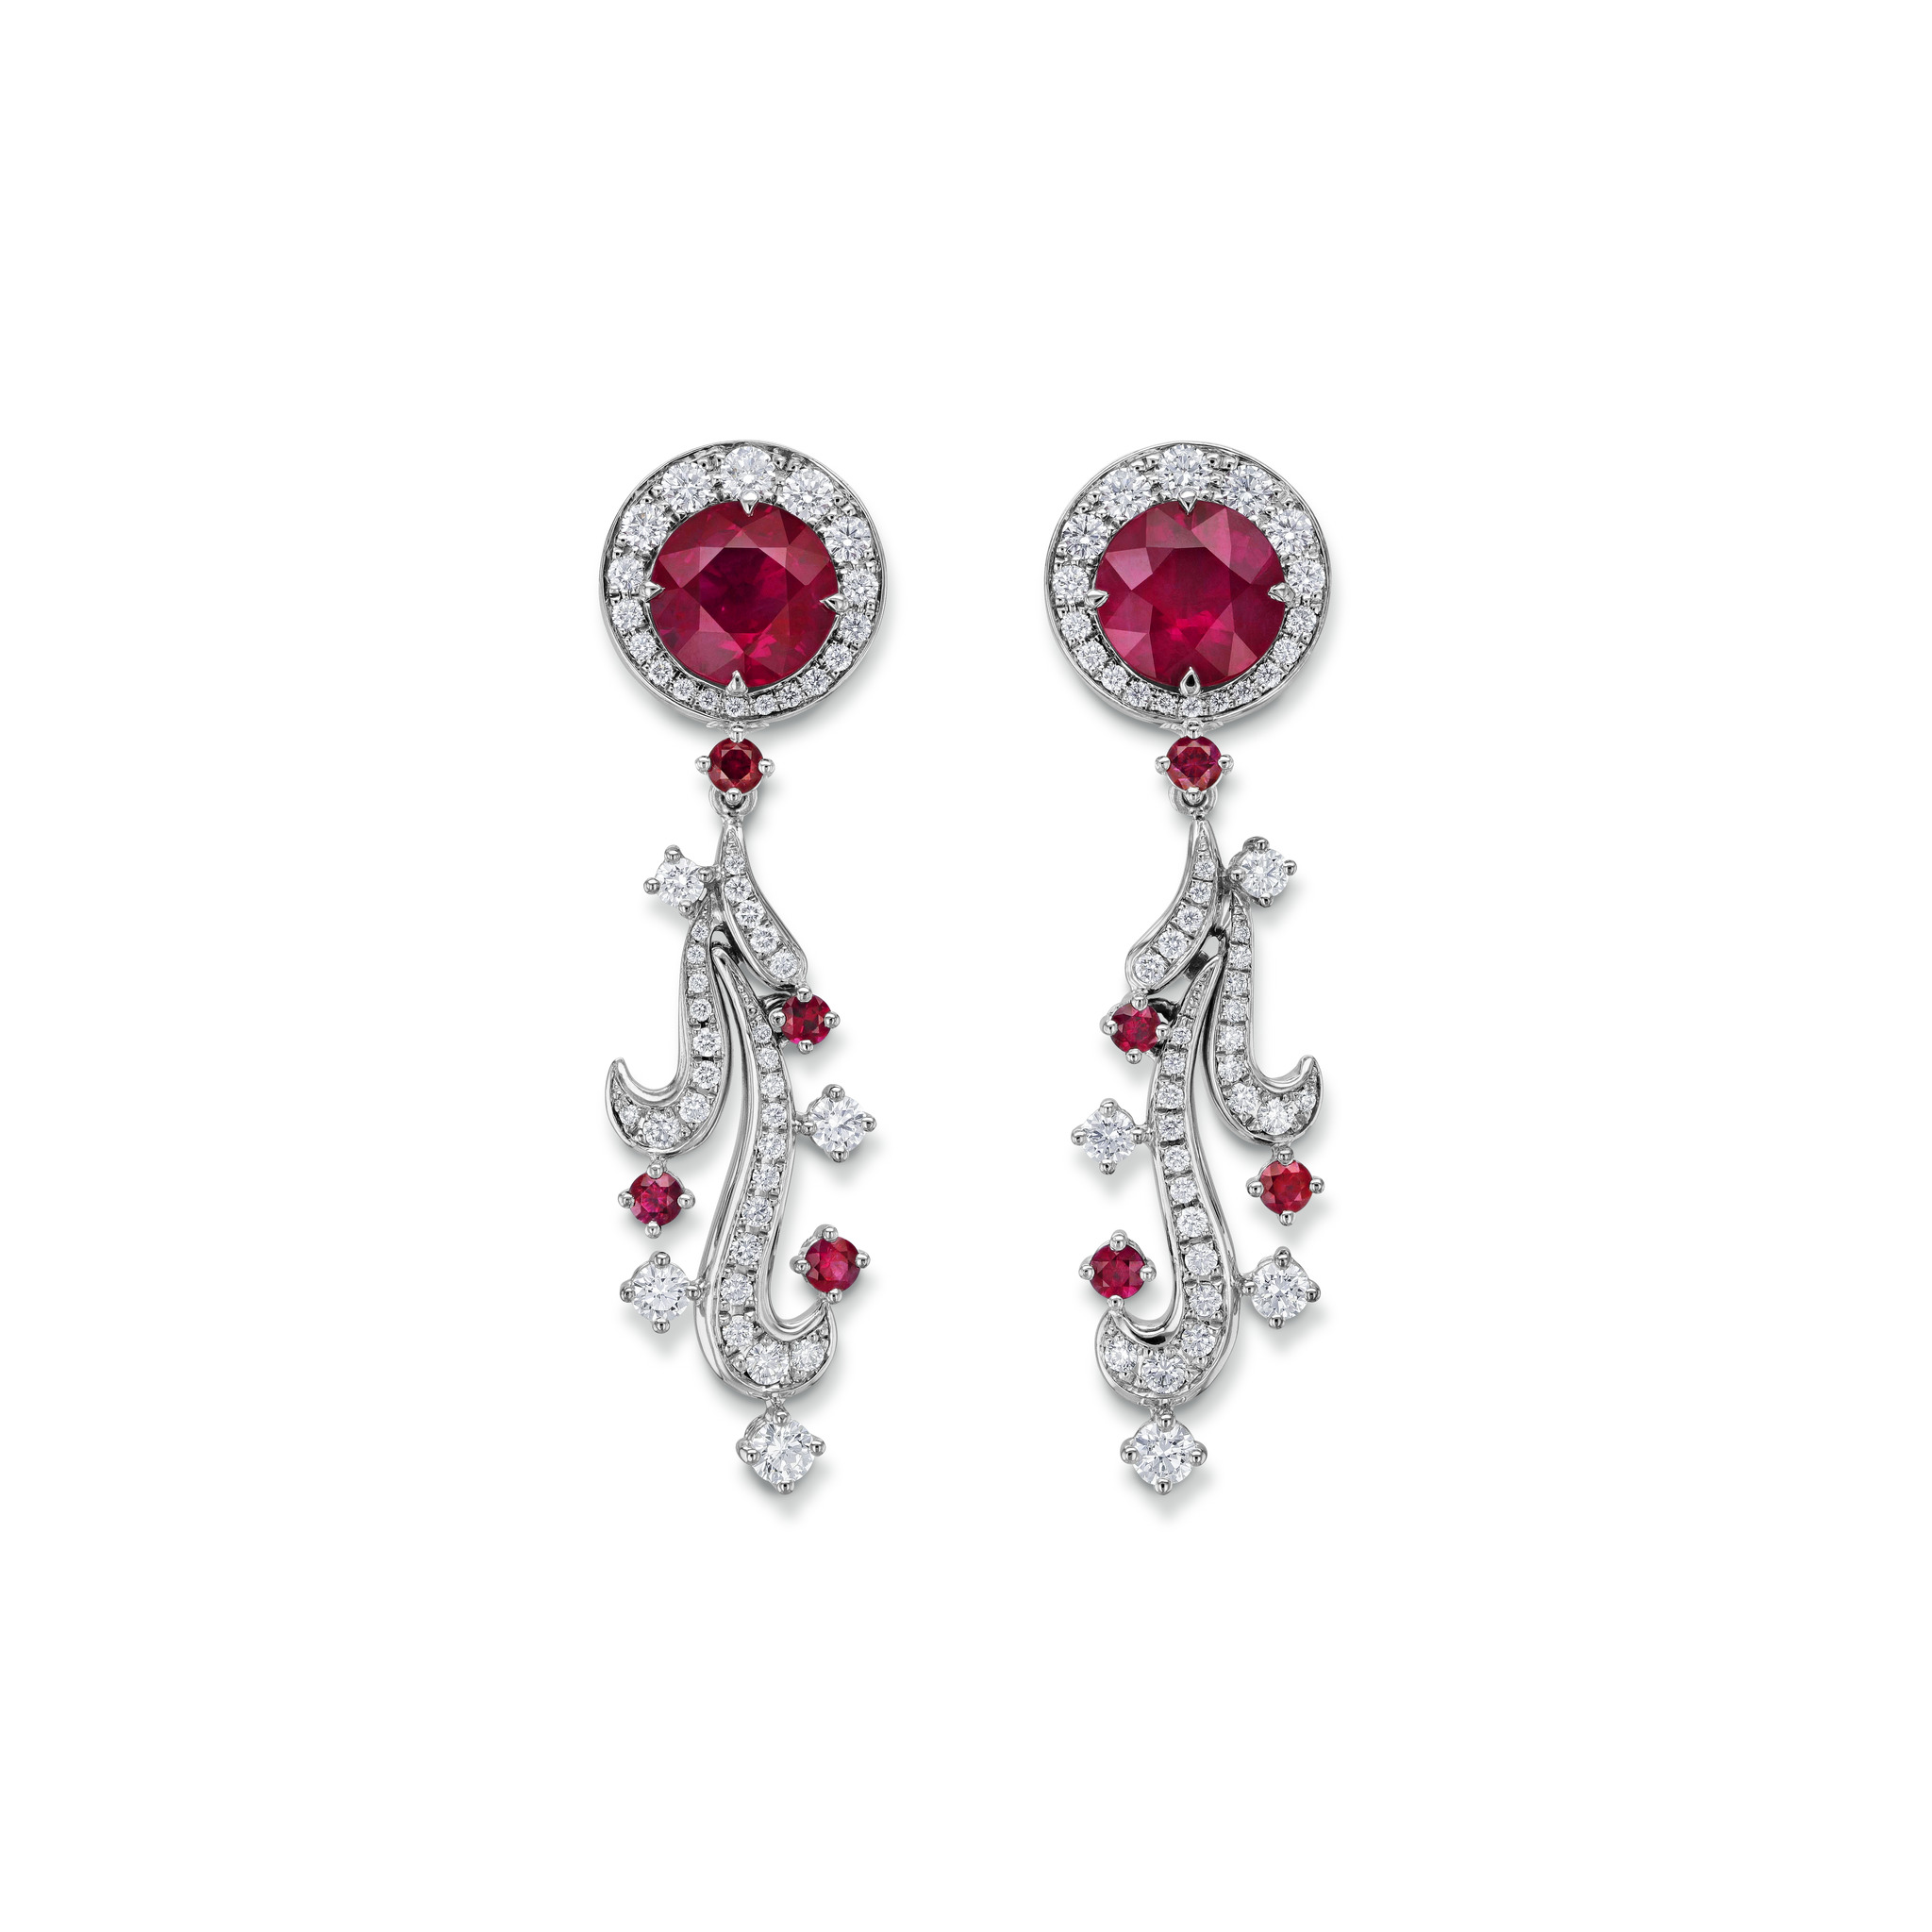 Earrings with rubies